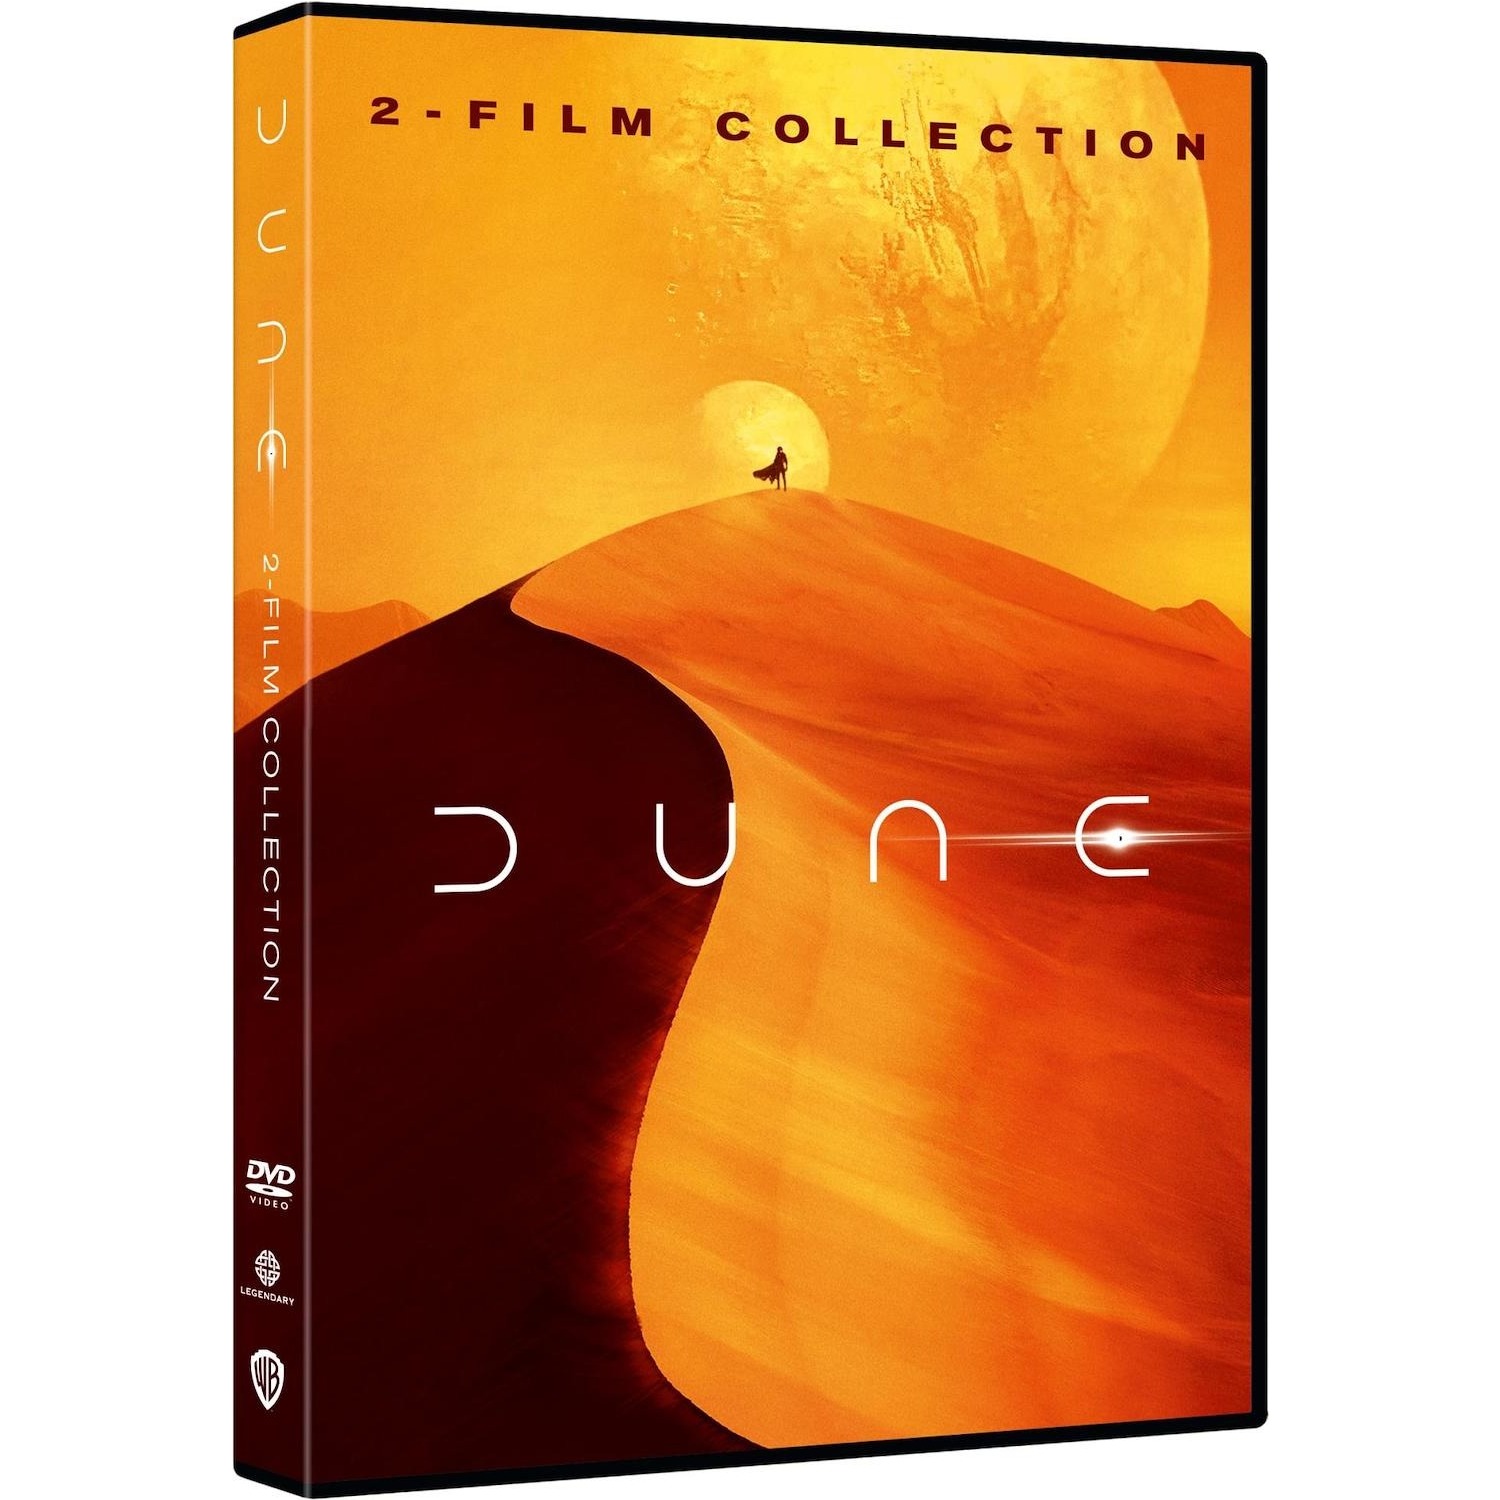 Immagine per Cofanetto DVD Dune - 2 Film Collection da DIMOStore